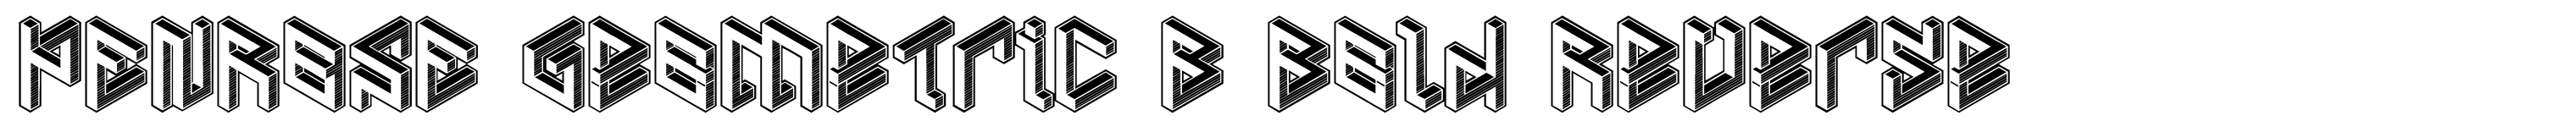 PENROSE Geometric B Bold Reverse